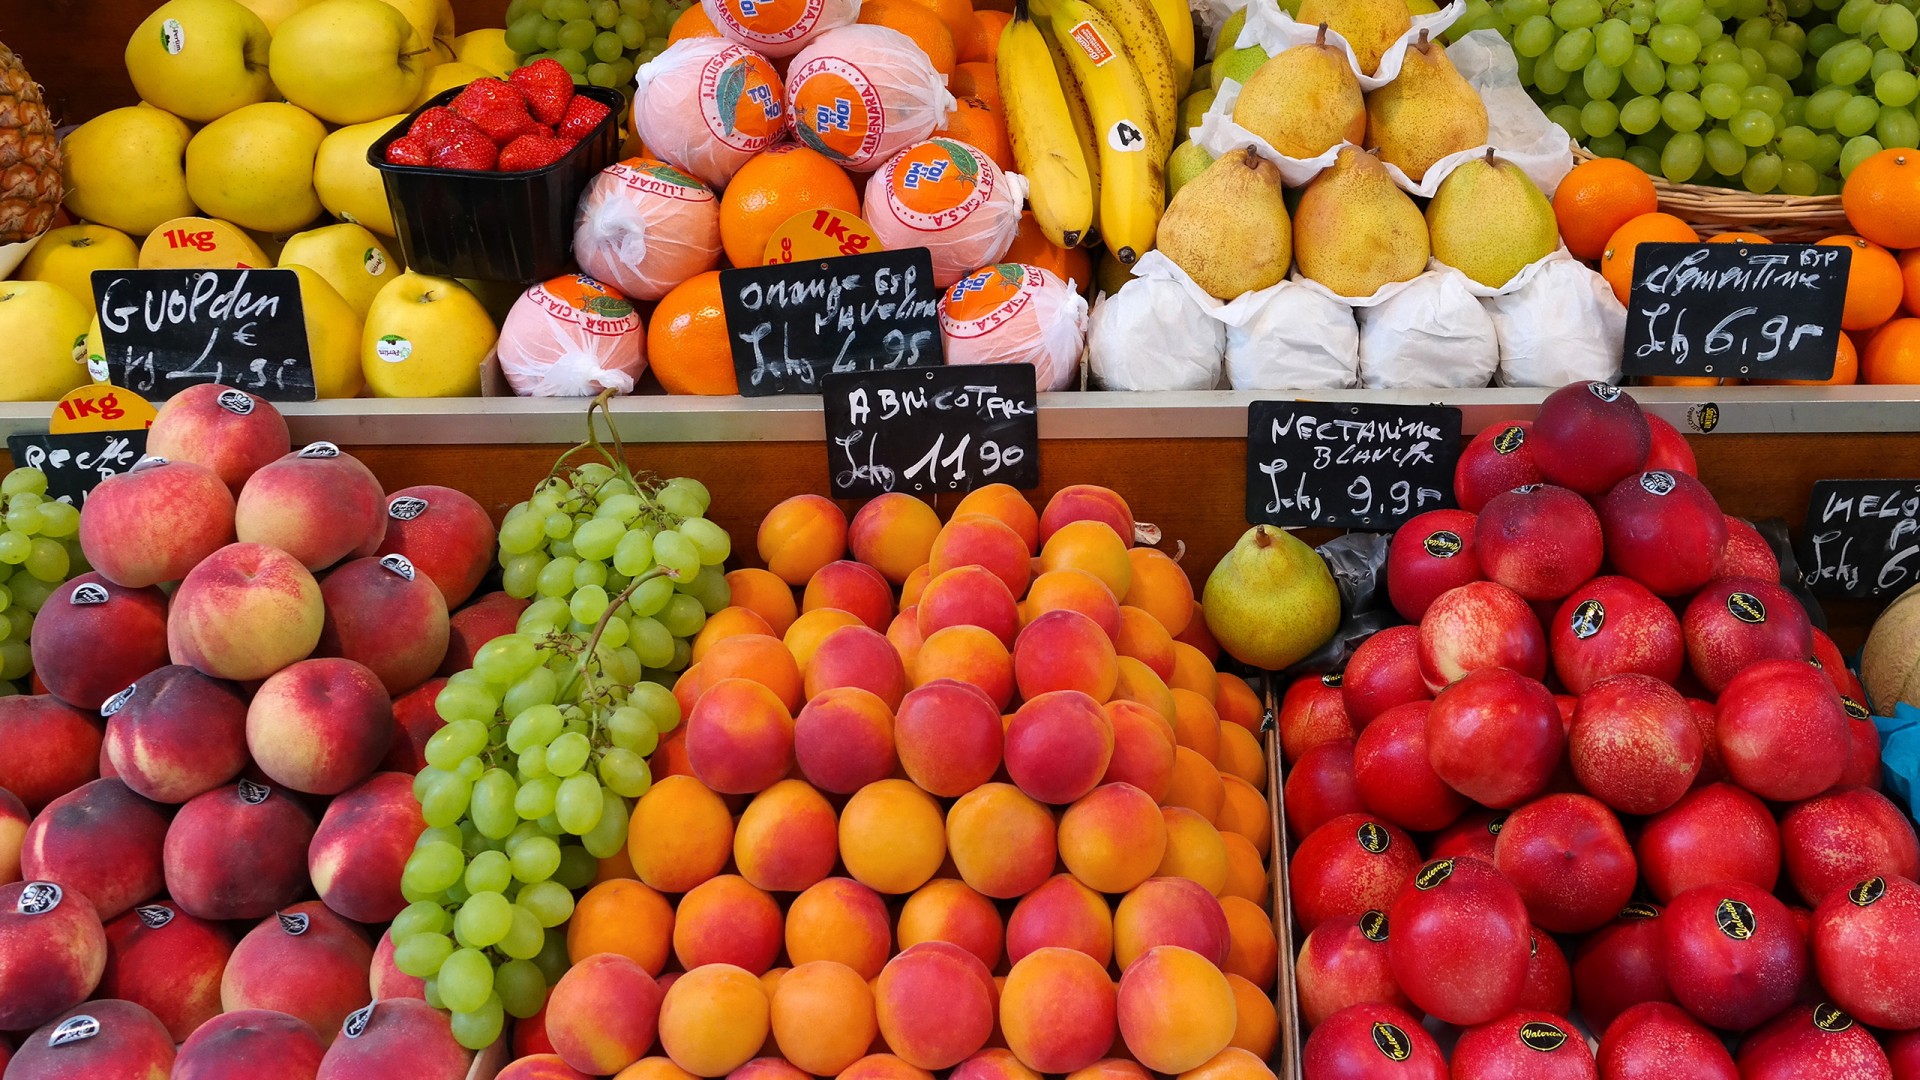 水果大全,超市,水果,马路市场,壁纸